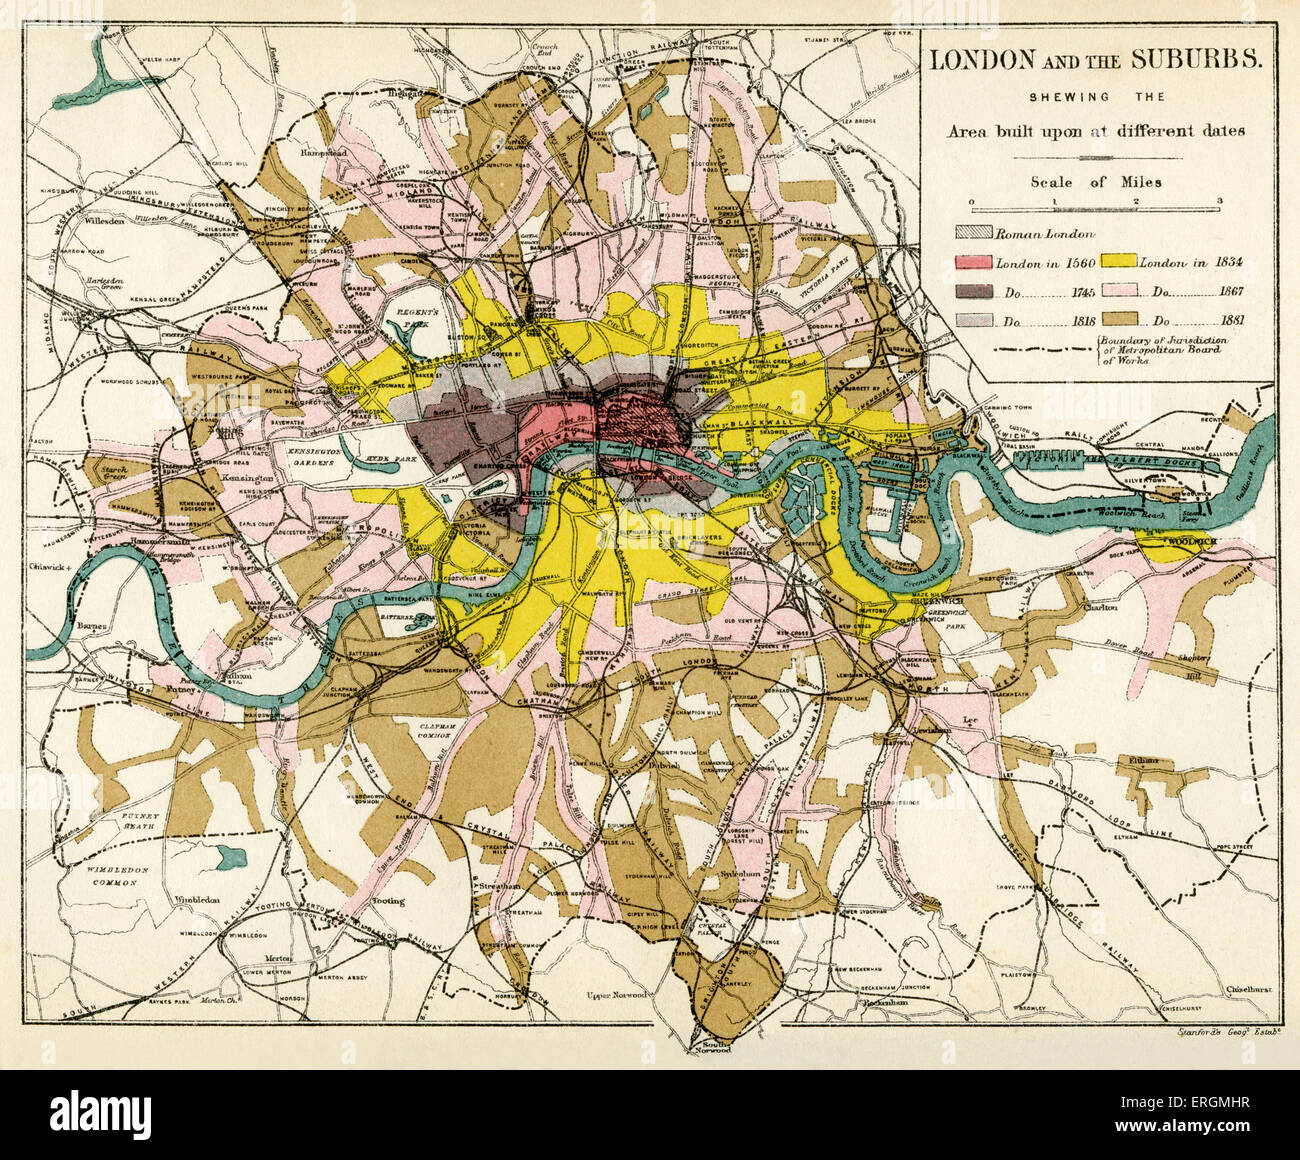 Londra e i suoi sobborghi, 1894. Mostra espansione dei sobborghi di Londra, al di fuori della città, dal 1560 fino al 1881. Foto Stock